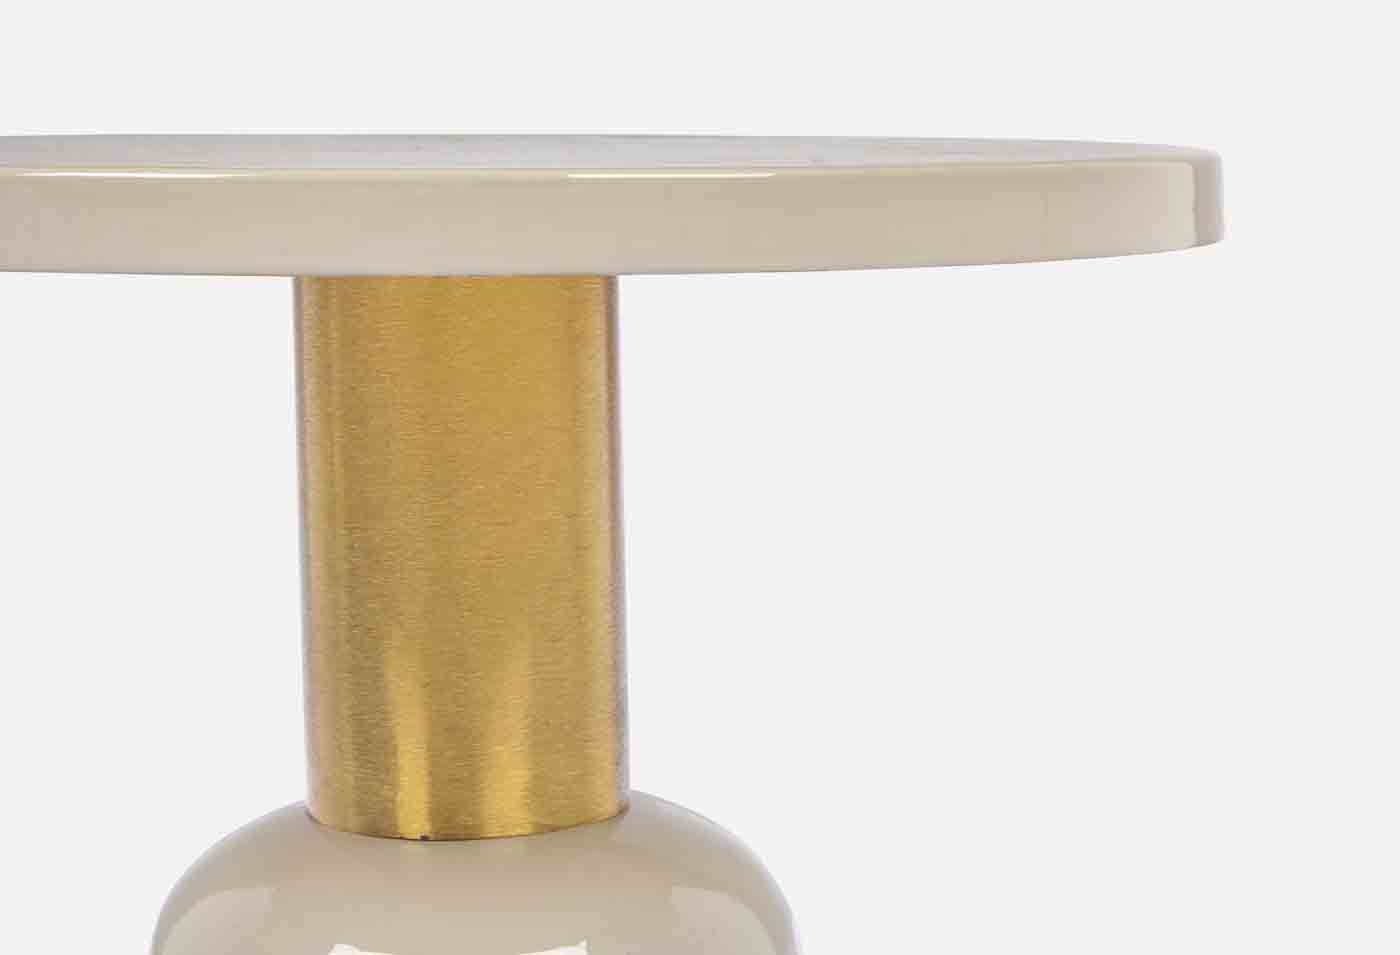 Der Beistelltisch Nalima wurde aus Metall gerfertigt, welches eine Feinbearbeitung aus Lack erhalten hat. Zusätzlich verfügt der Tisch über vergoldete Bereiche, welche das moderne Design unterstreichen.